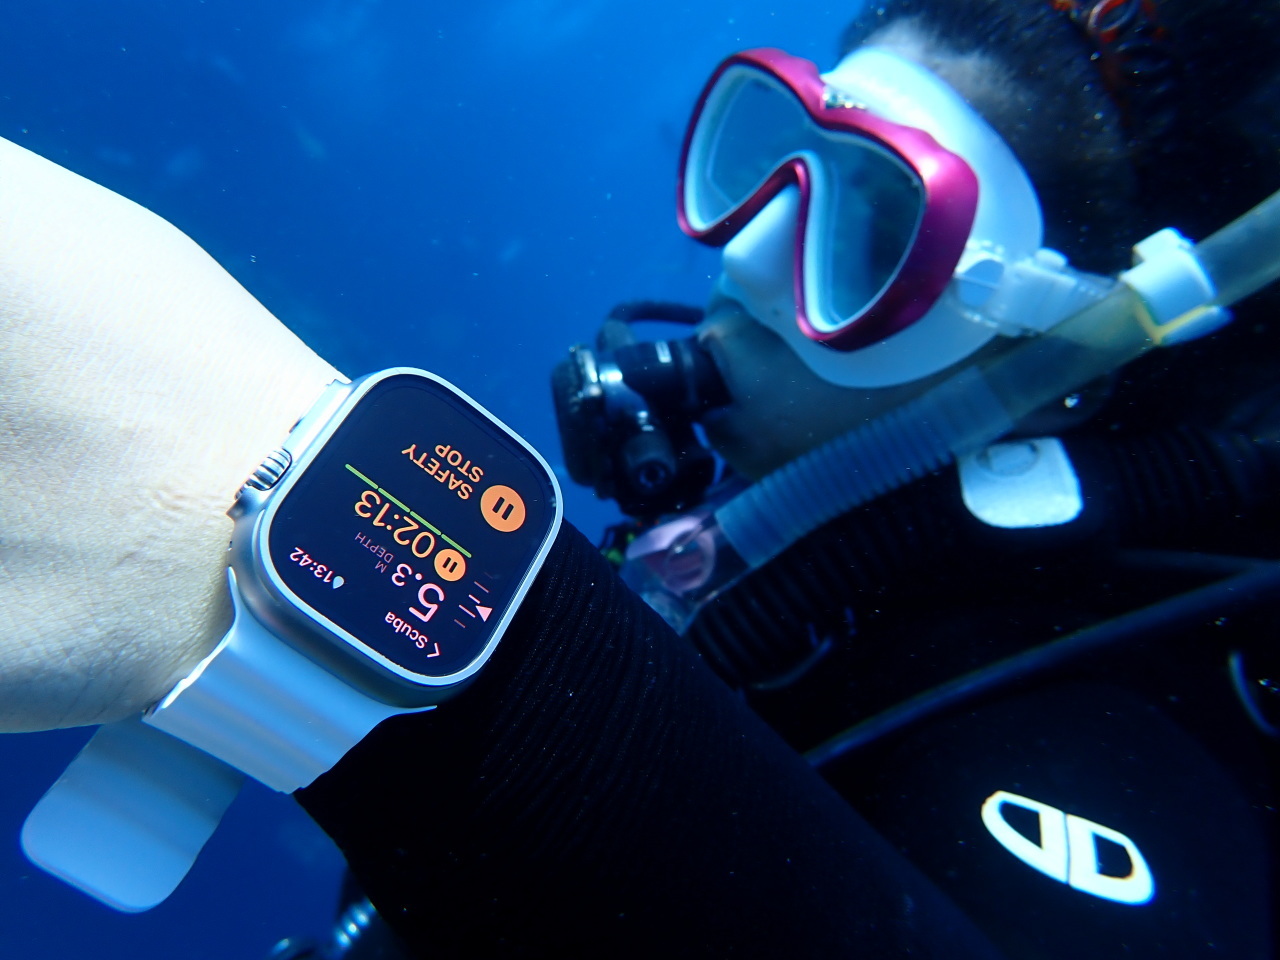 Apple Watch Ultraがダイブコンピューターに--ダイバー待望のアプリ「Oceanic+」を使ってみた - CNET Japan